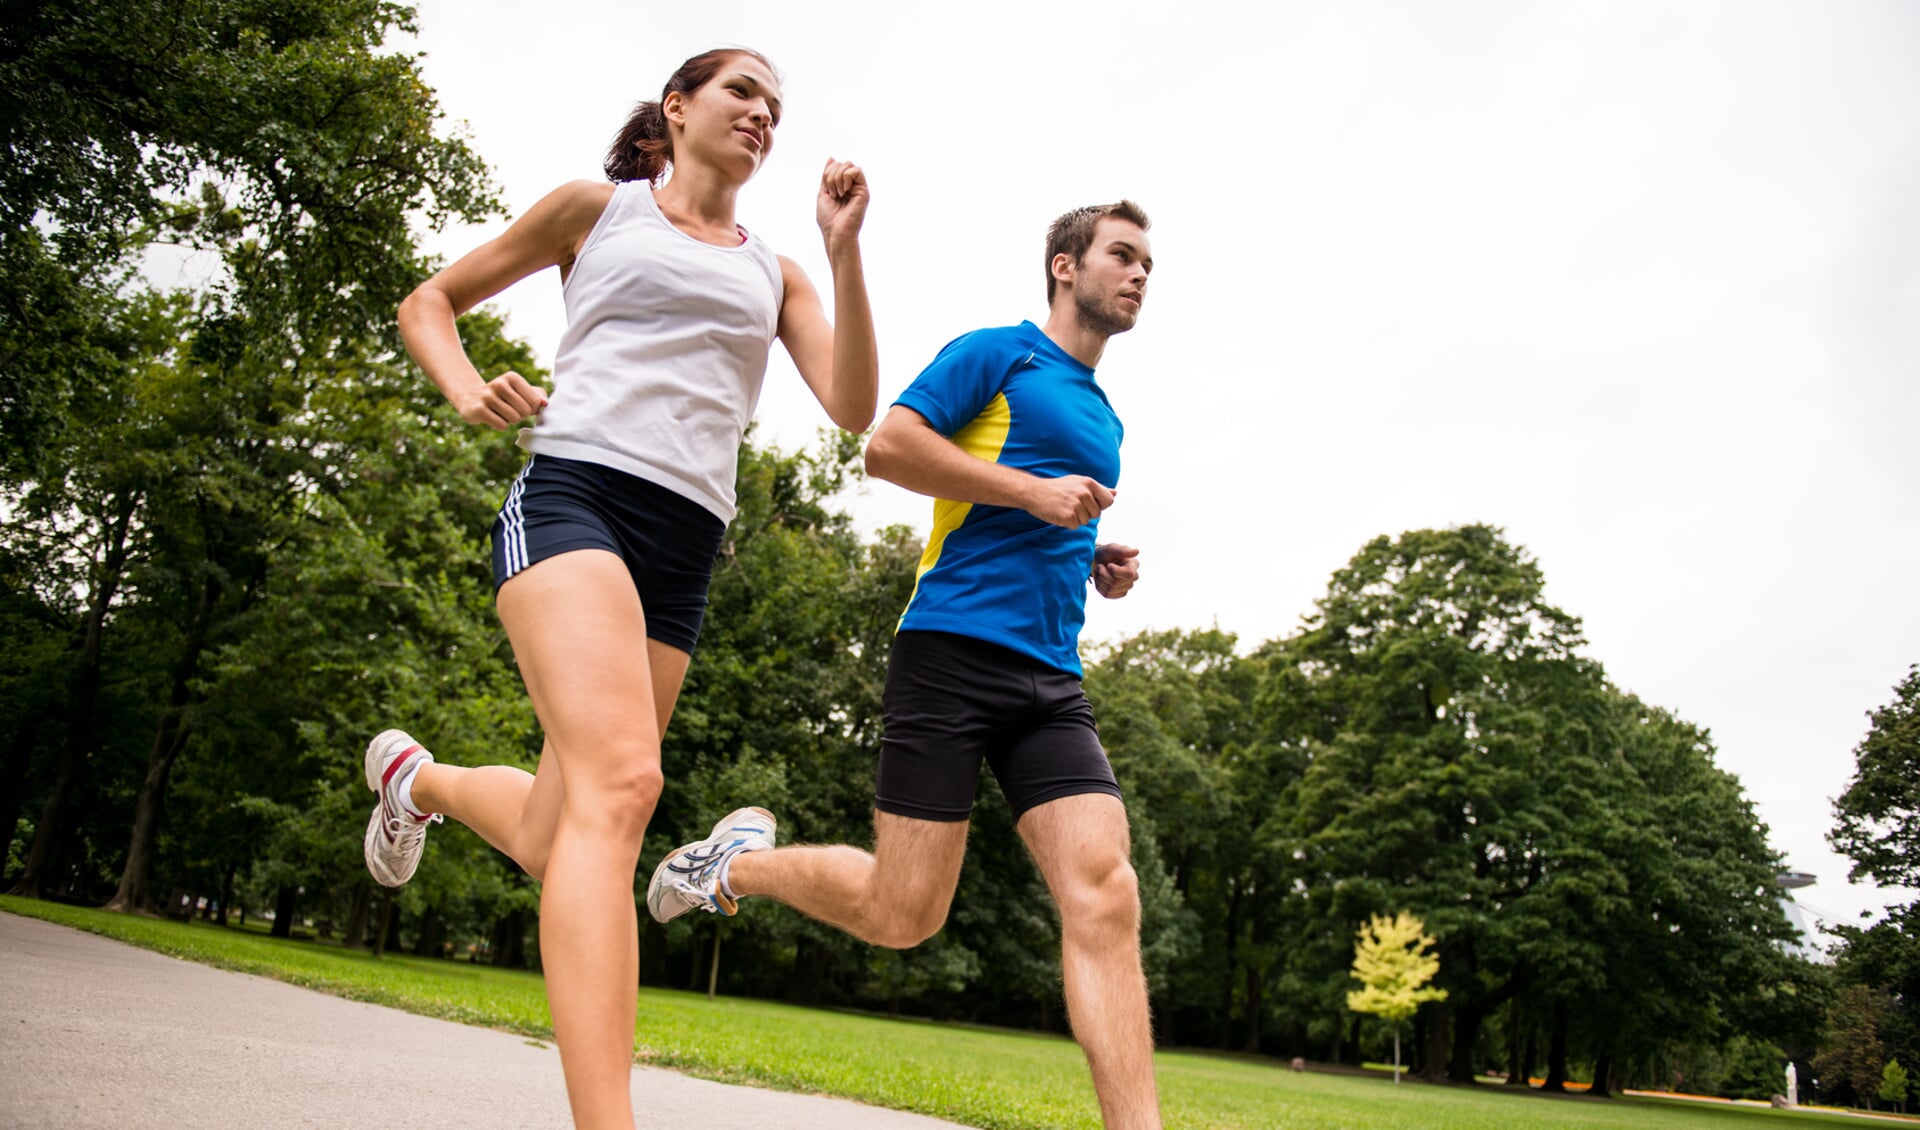 Hardlopen heeft een positief effect op de gezondheid. Maar het is ook de sport met het hoogste risico op blessures.